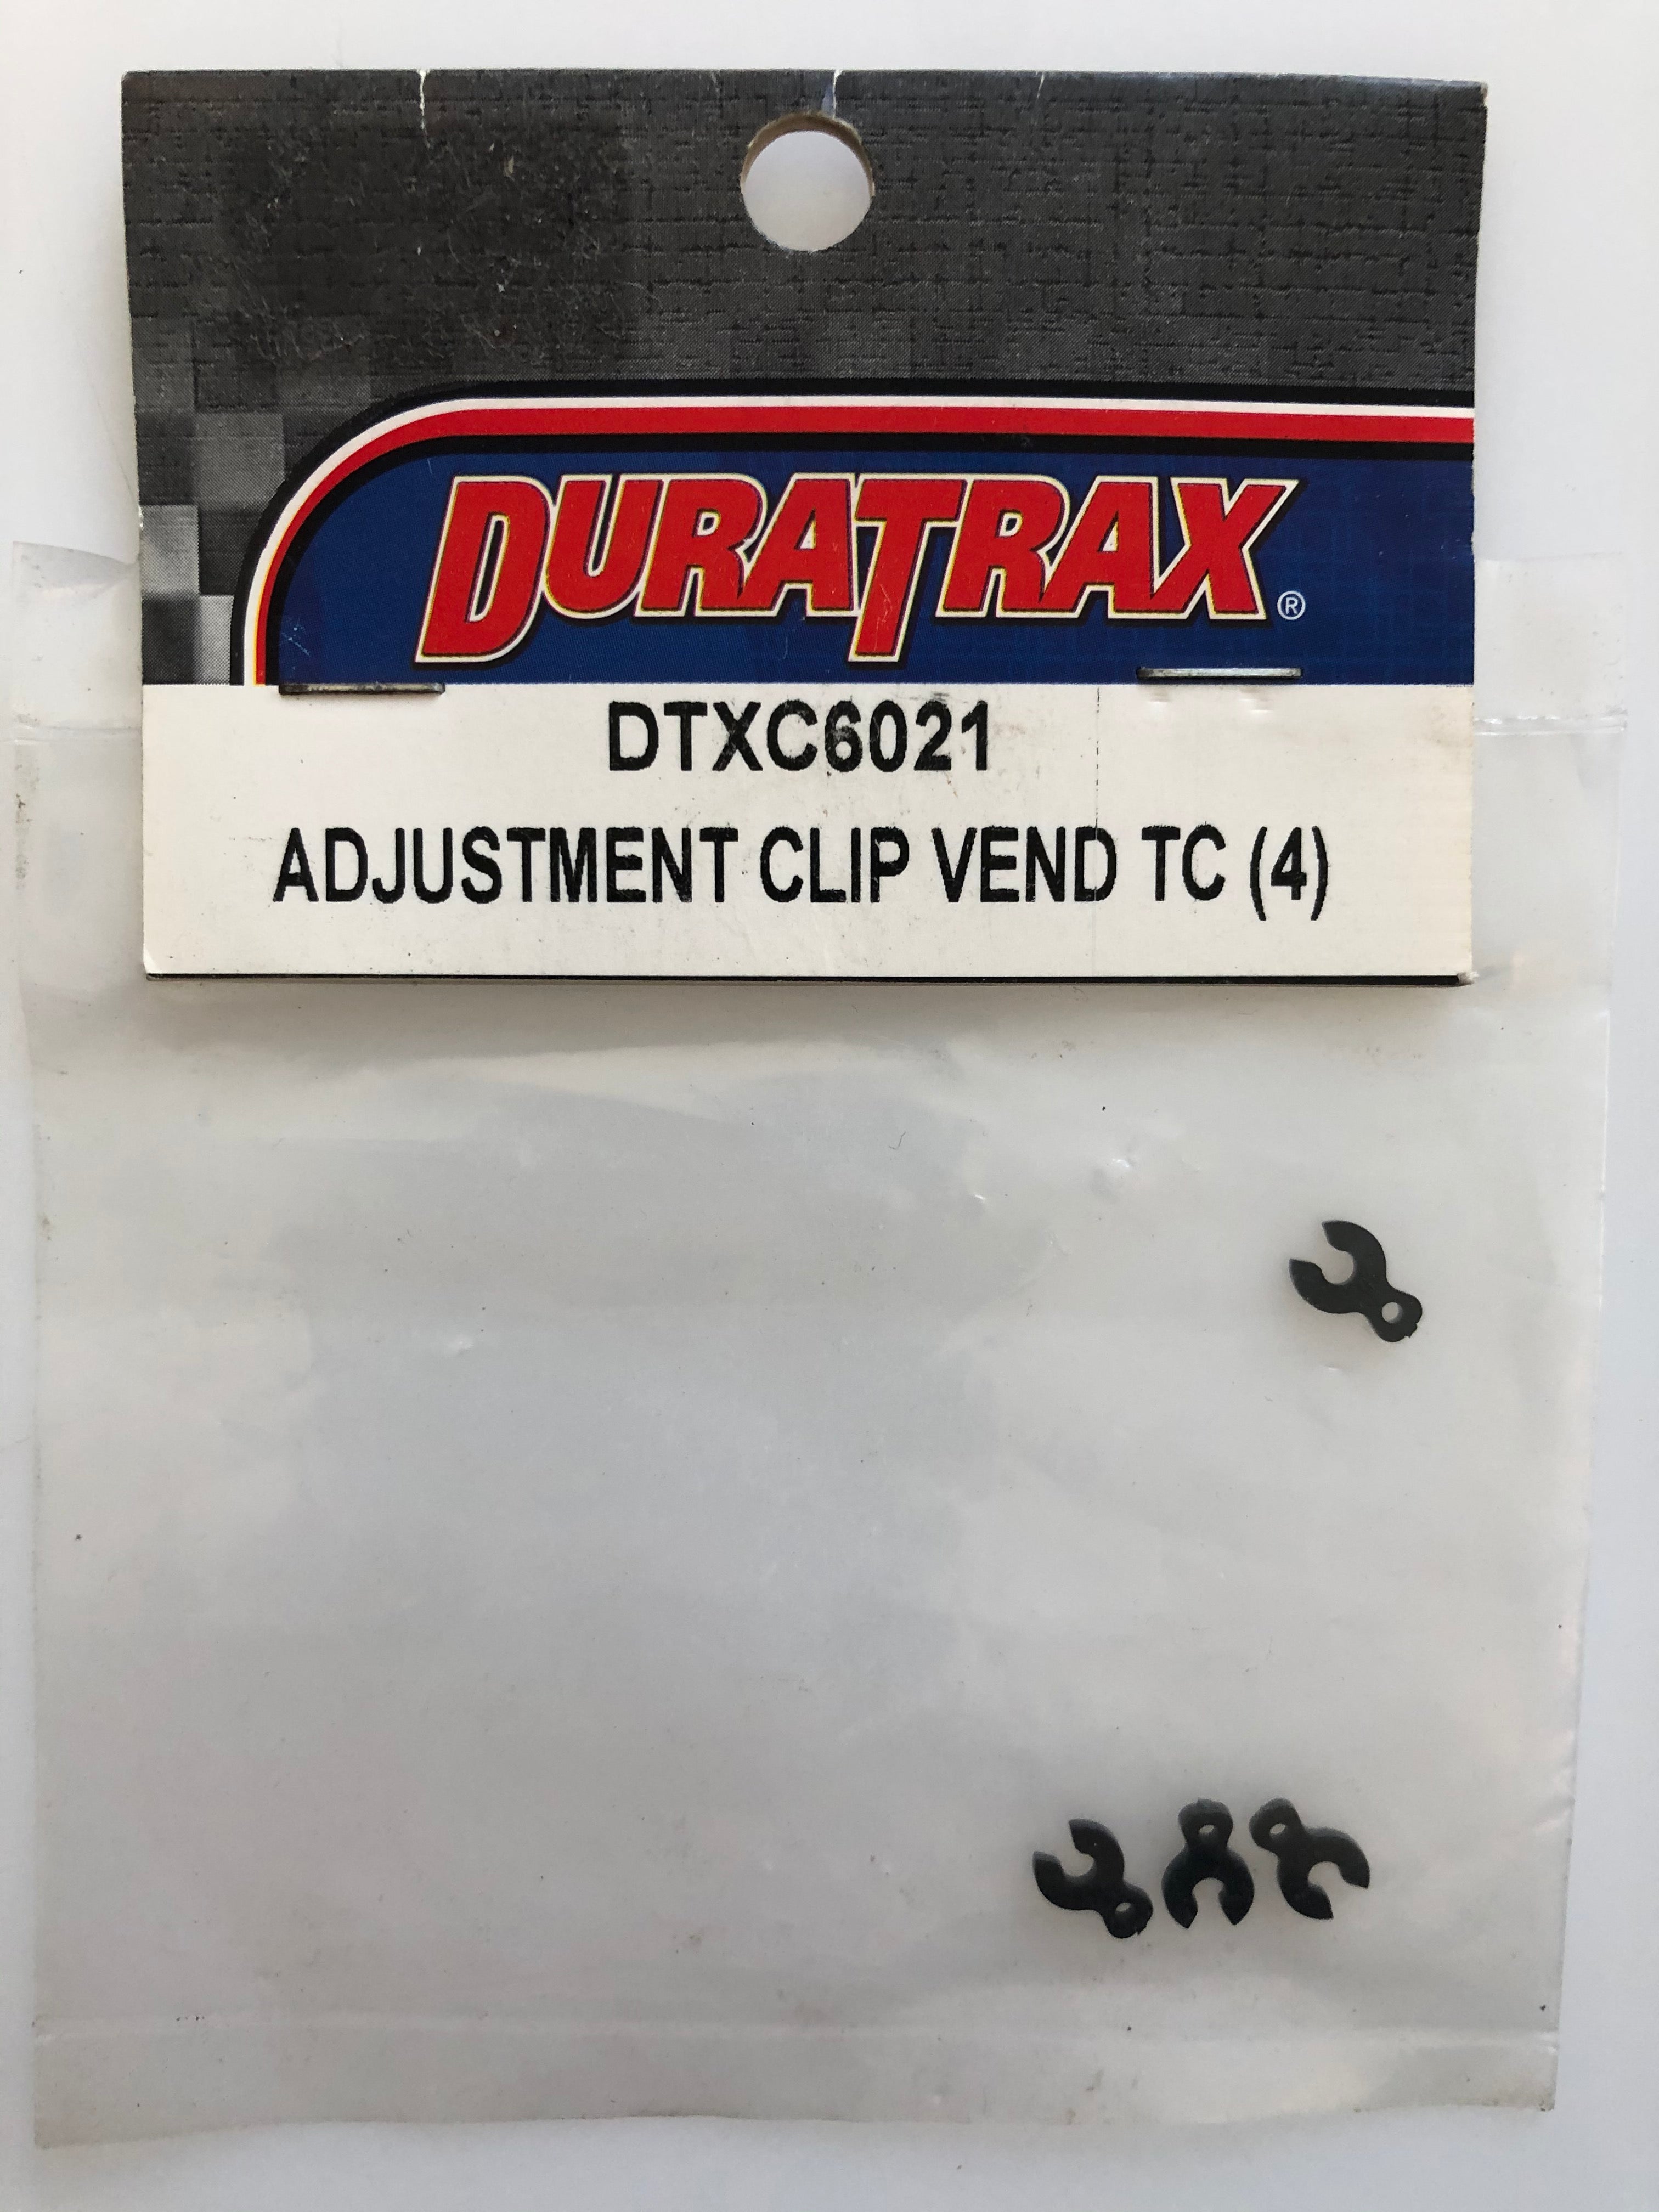 Duratrax Adjustment Clip Vend TC (4) DTXC6021